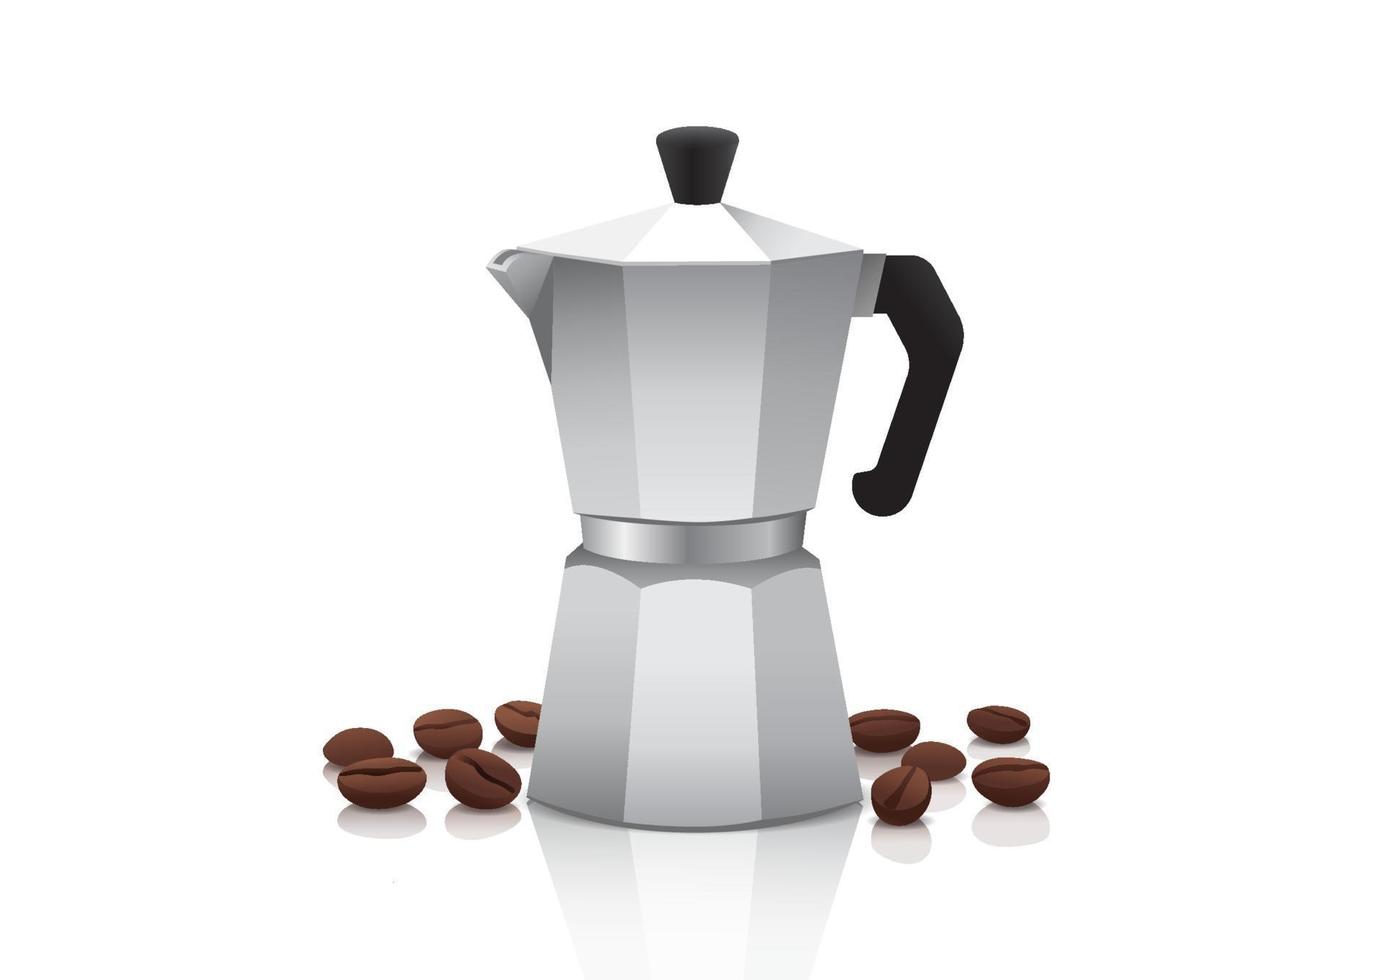 realistisk vektormoka-kruka eller kaffebryggare med rostade kaffebönor på vit bakgrund, isolerad vektorillustration vektor